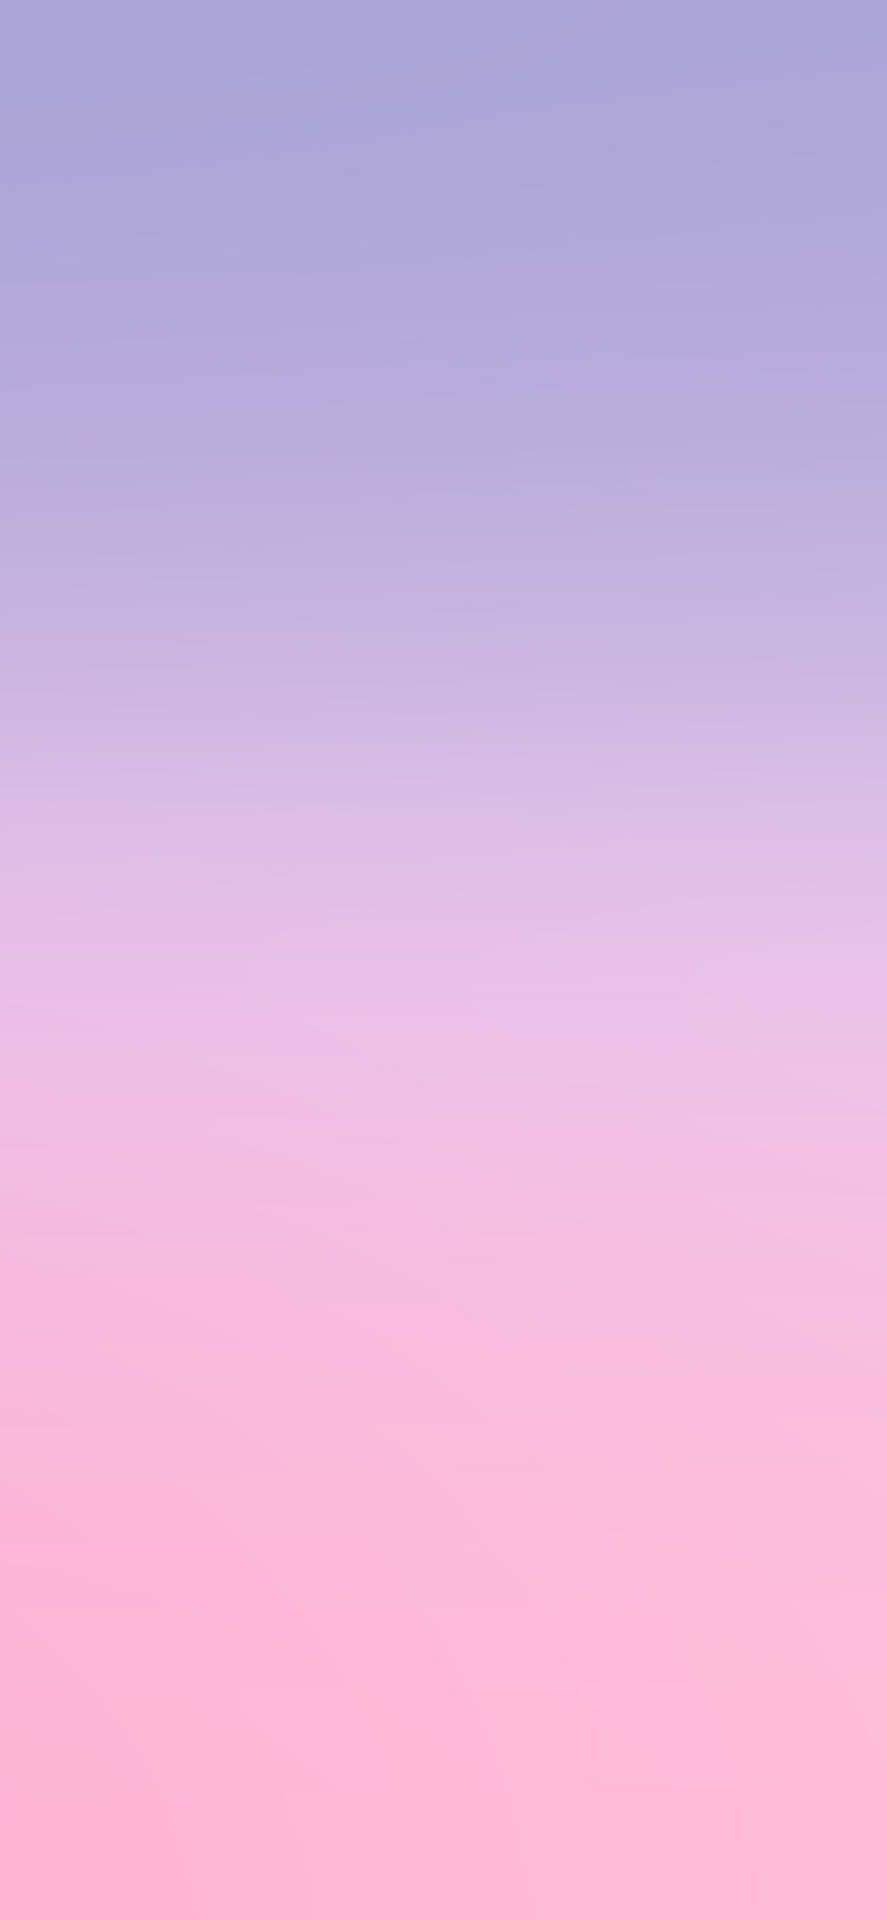 Download Light Purple Aesthetic Pink Gradient Wallpaper